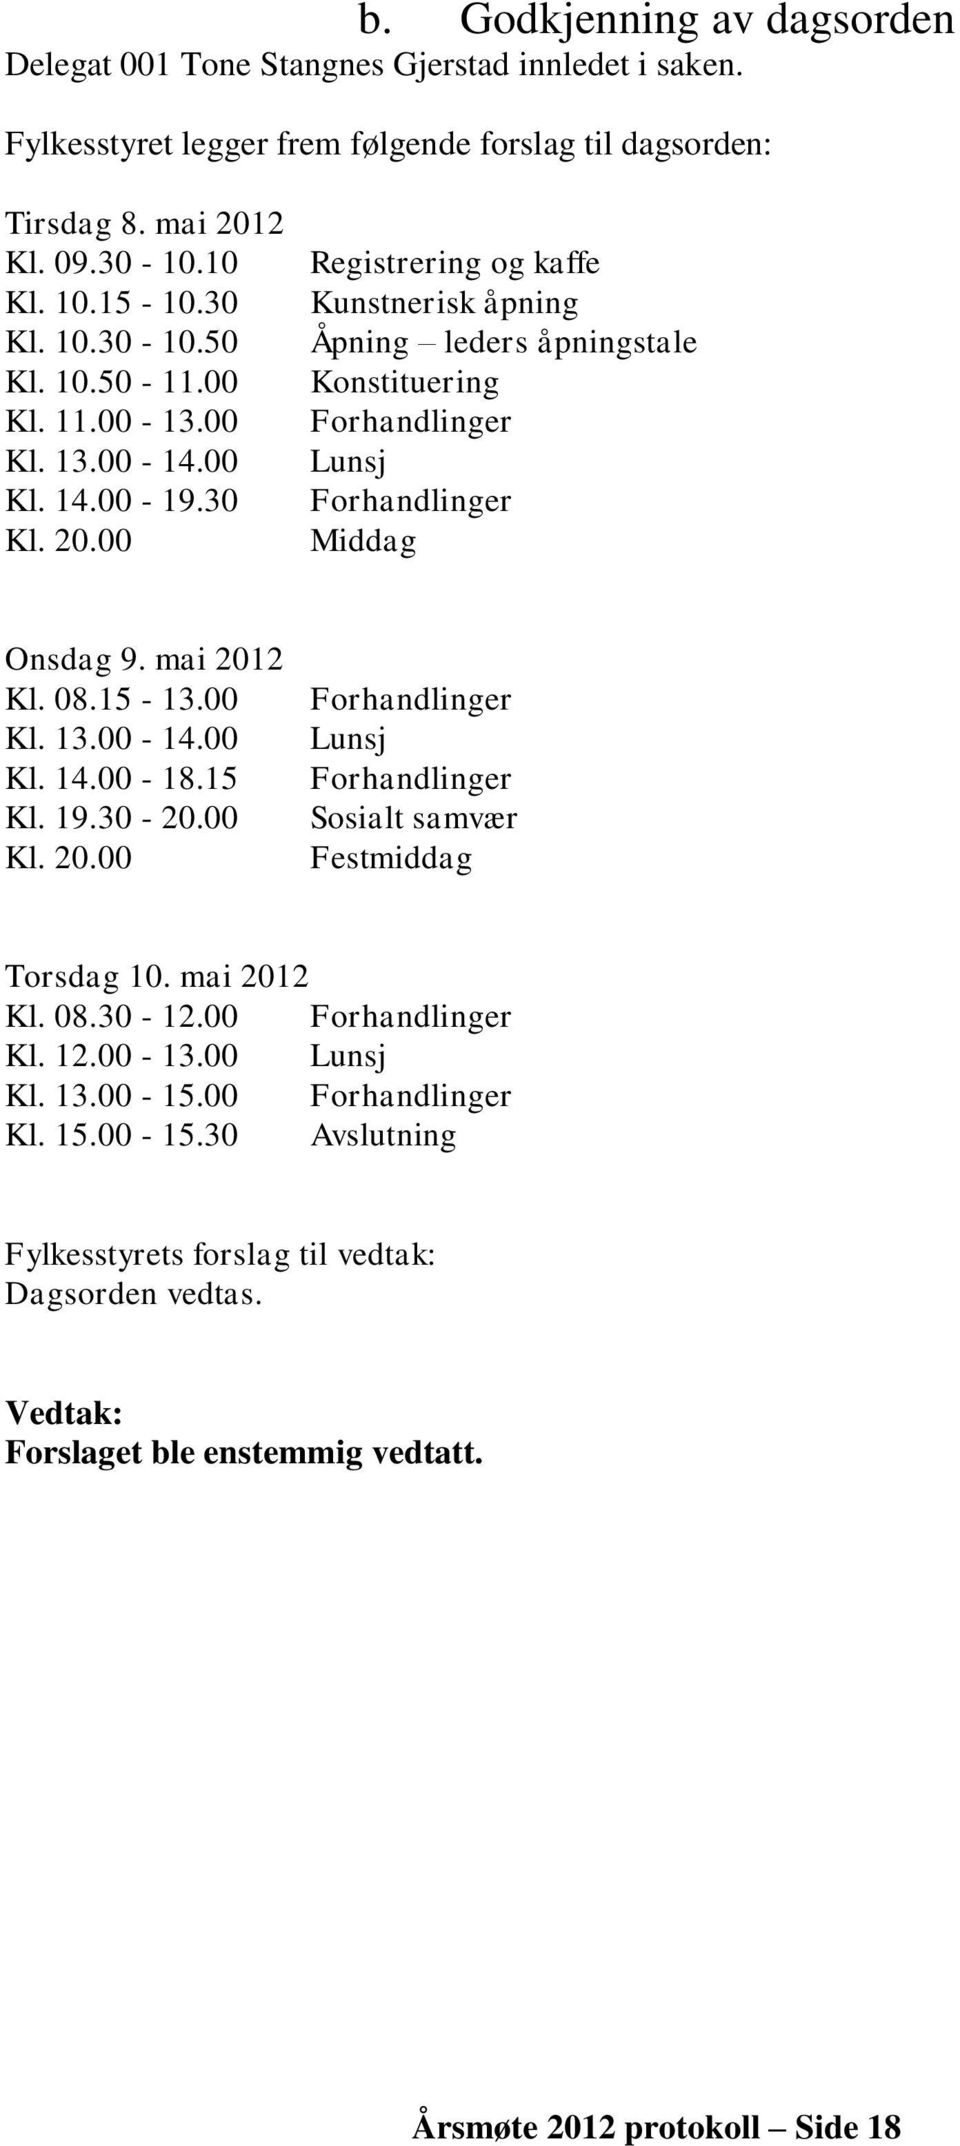 00 Registrering og kaffe Kunstnerisk åpning Åpning leders åpningstale Konstituering Forhandlinger Lunsj Forhandlinger Middag Onsdag 9. mai 2012 Kl. 08.15-13.00 Kl. 13.00-14.00 Kl. 14.00-18.15 Kl. 19.